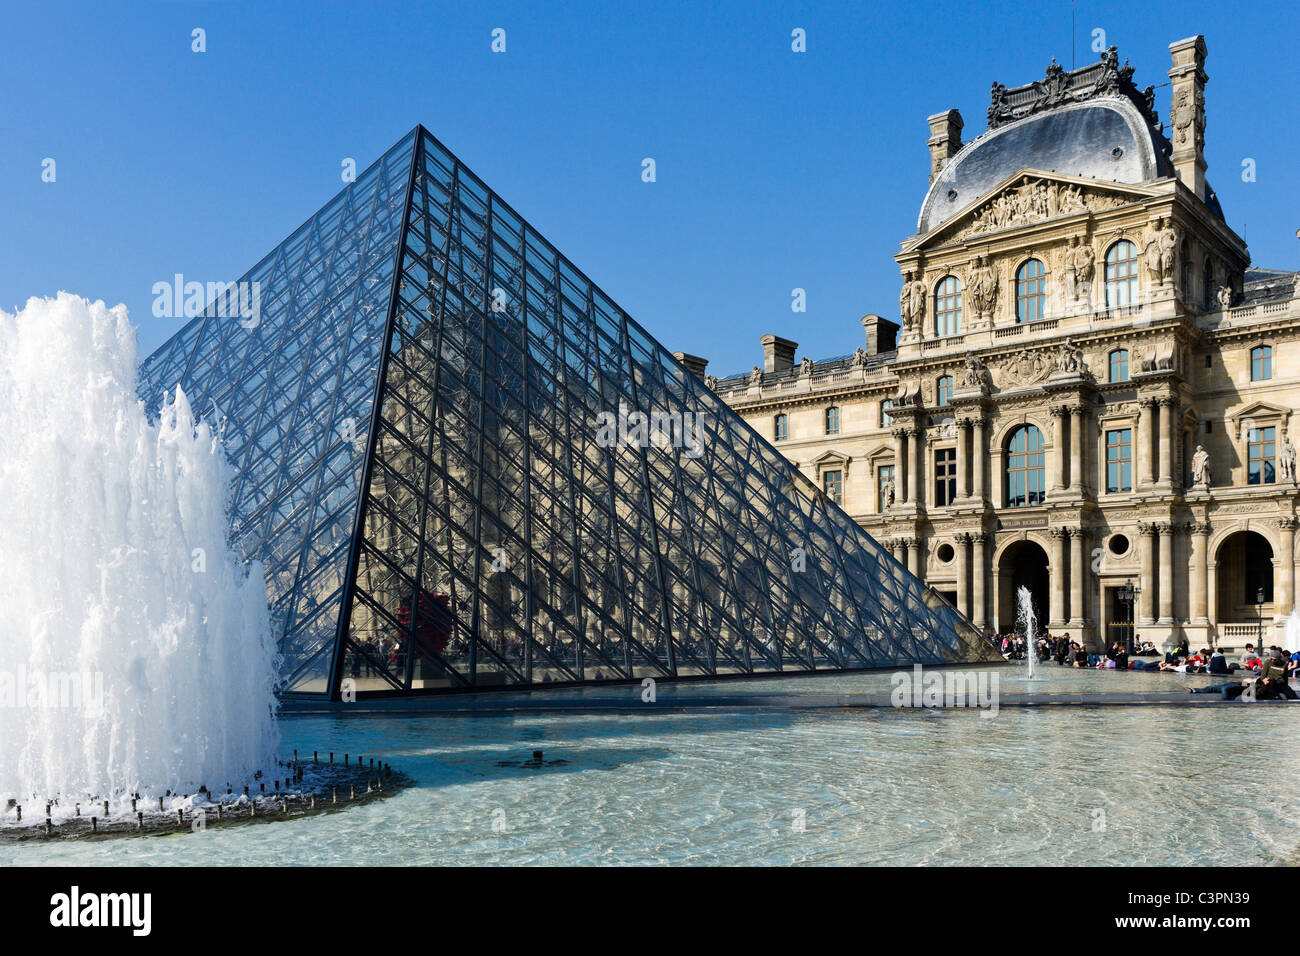 Musee du Louvre, Paris, France Stock Photo